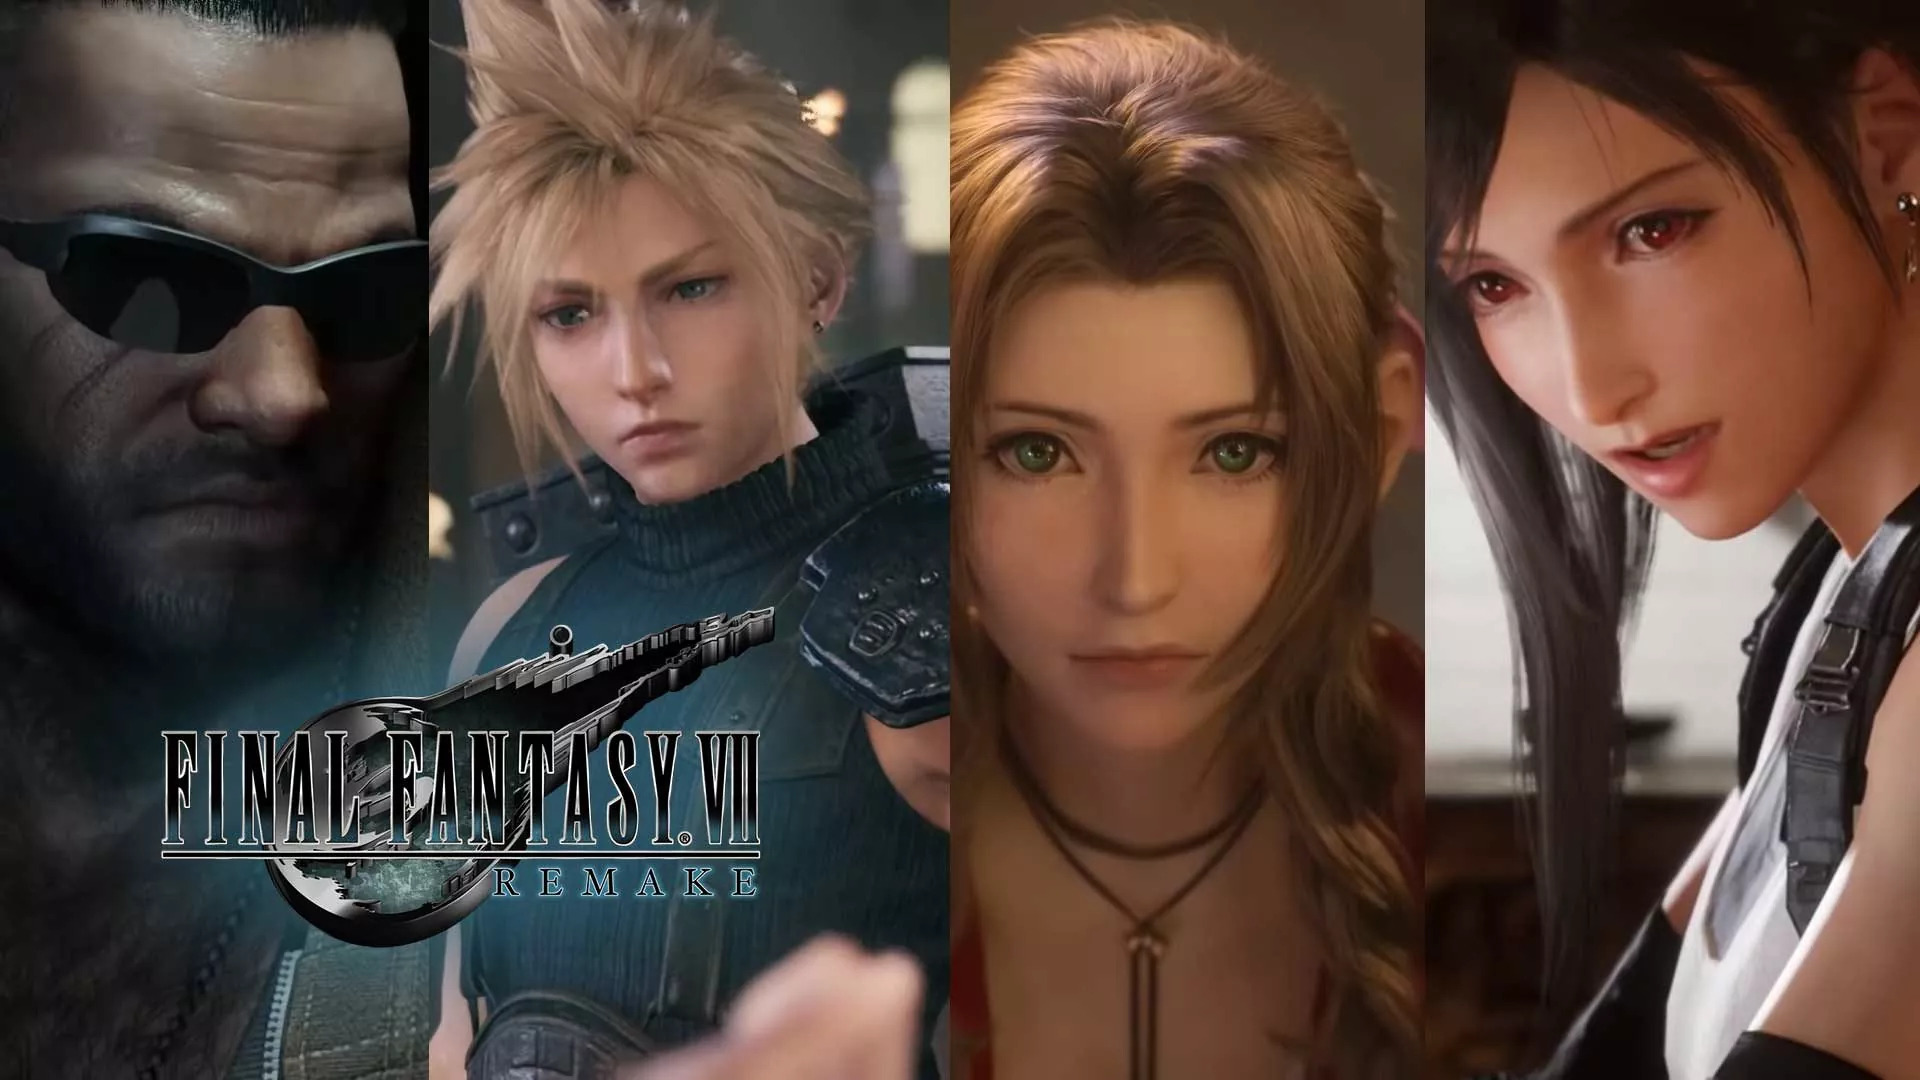 Inside Final Fantasy VII Remake